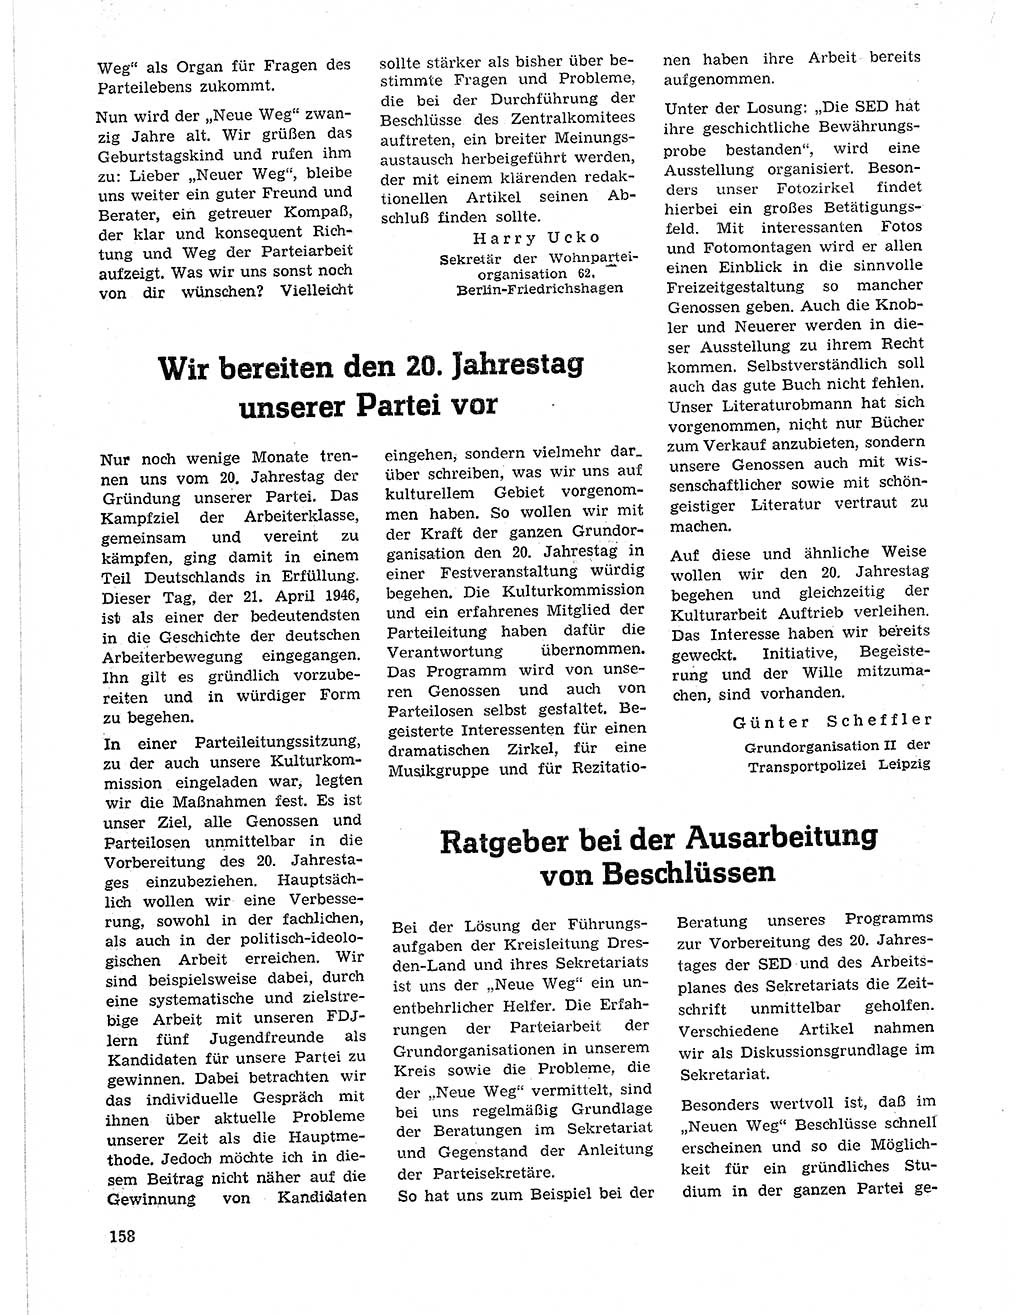 Neuer Weg (NW), Organ des Zentralkomitees (ZK) der SED (Sozialistische Einheitspartei Deutschlands) für Fragen des Parteilebens, 21. Jahrgang [Deutsche Demokratische Republik (DDR)] 1966, Seite 158 (NW ZK SED DDR 1966, S. 158)